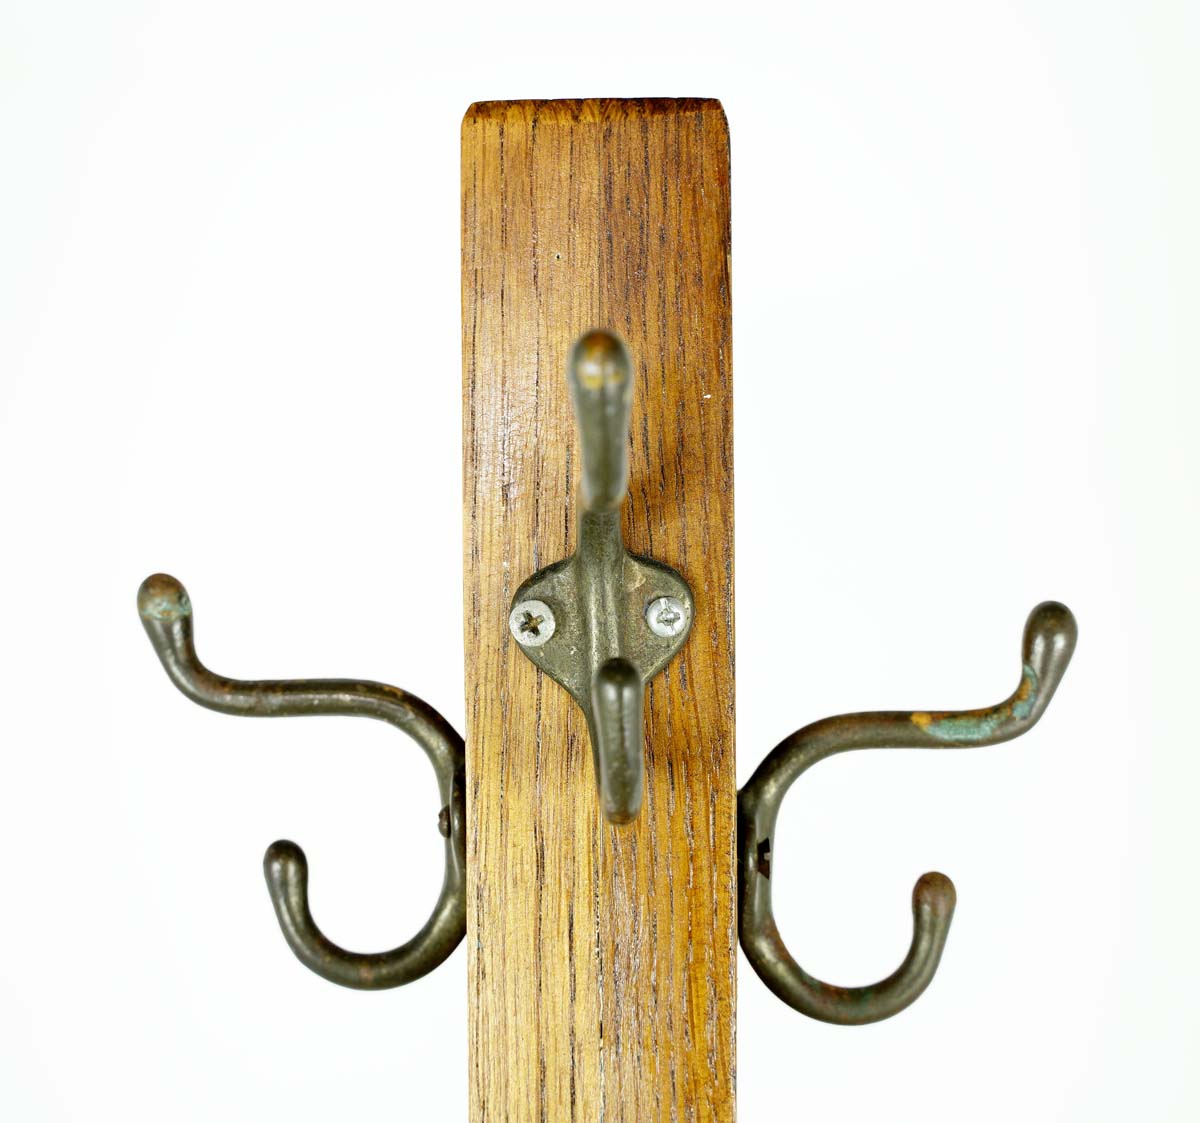 Rustic Cast Iron Garden Tools Coat Rack Hook